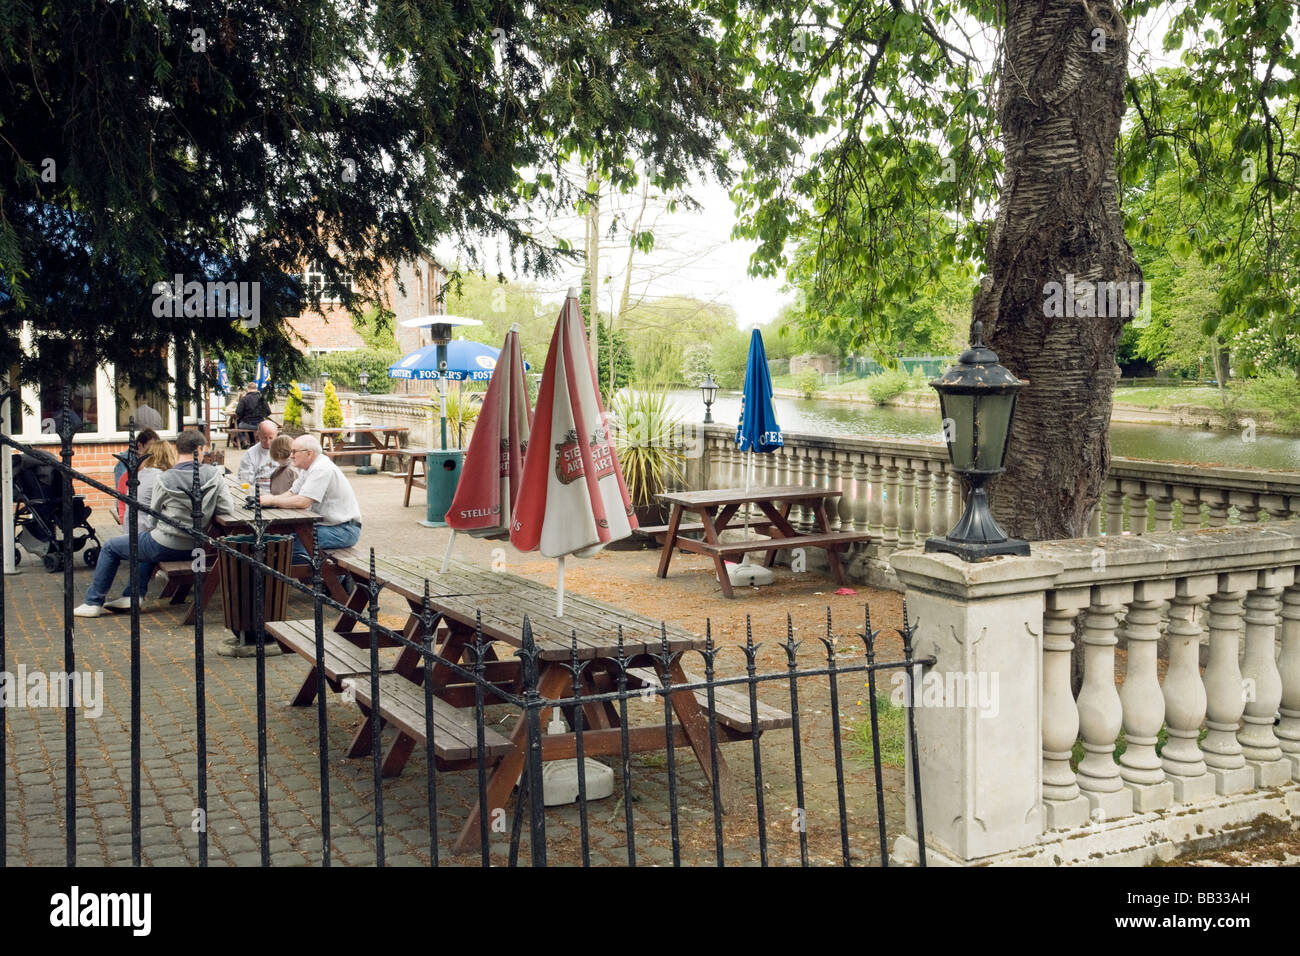 Les personnes qui boivent au pub-restaurant Boathouse sur les rives de la Tamise, Wallingford, Oxfordshire, Angleterre Banque D'Images